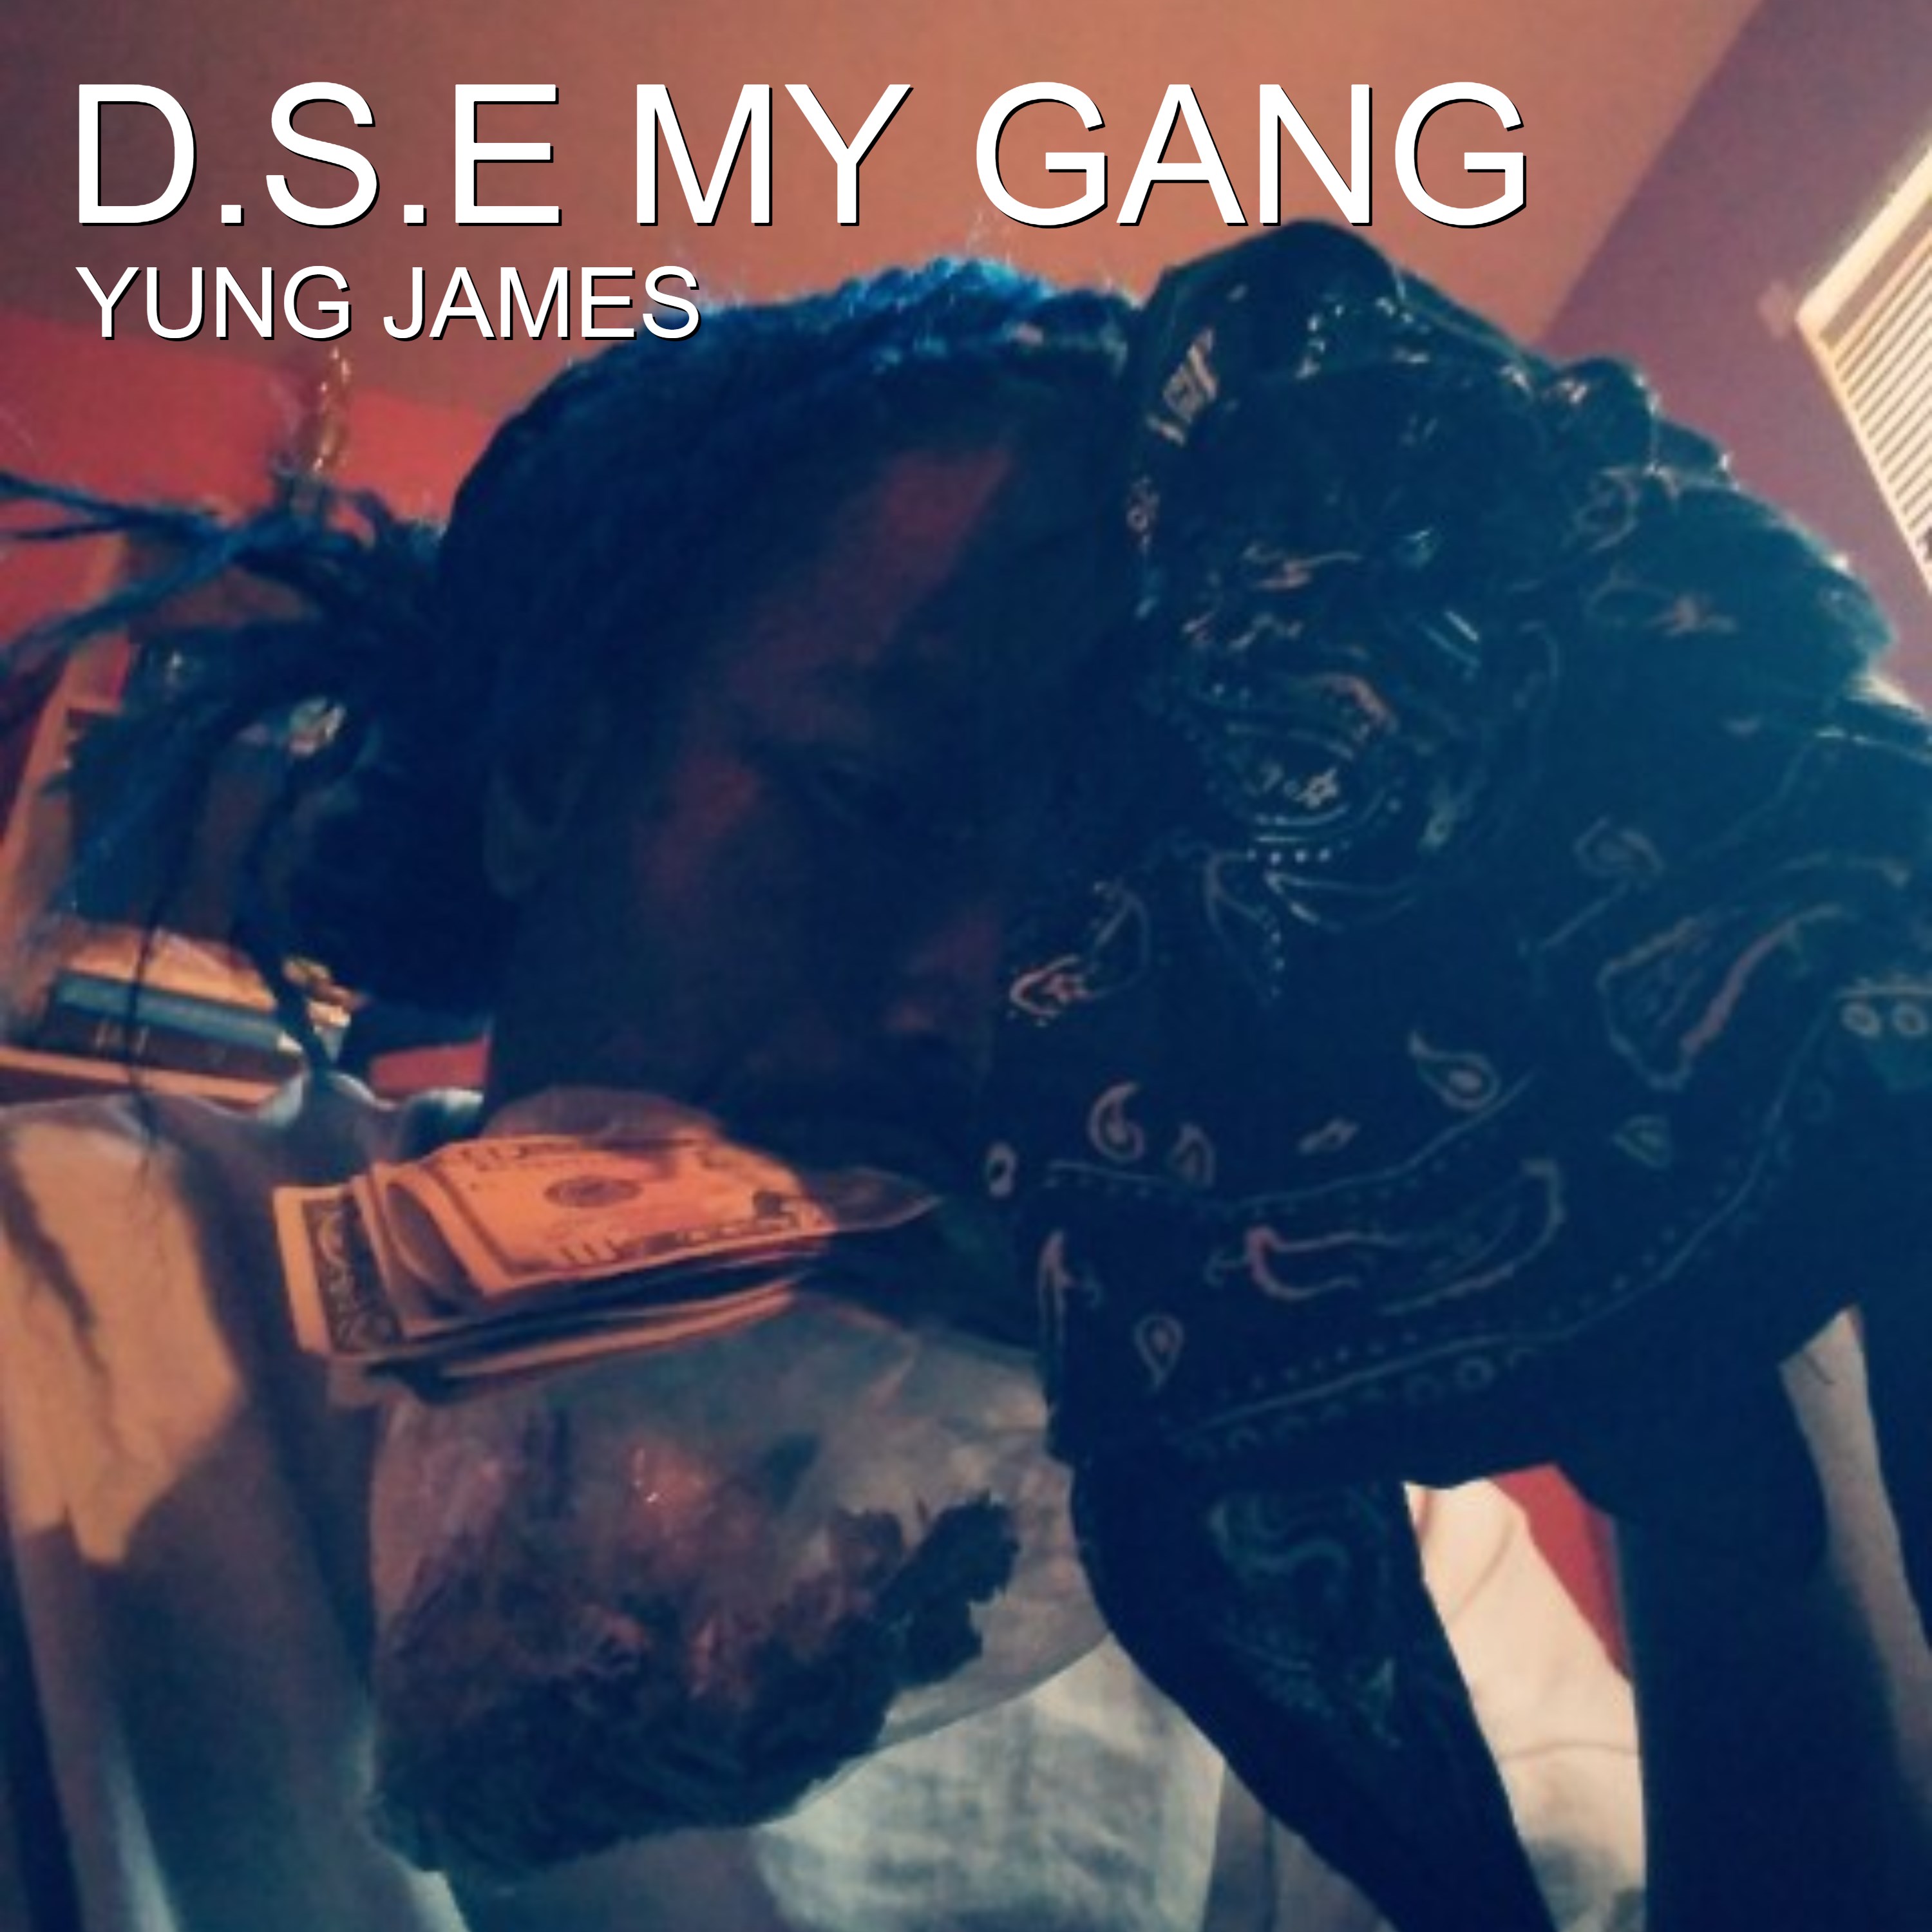 D.S.E My Gang